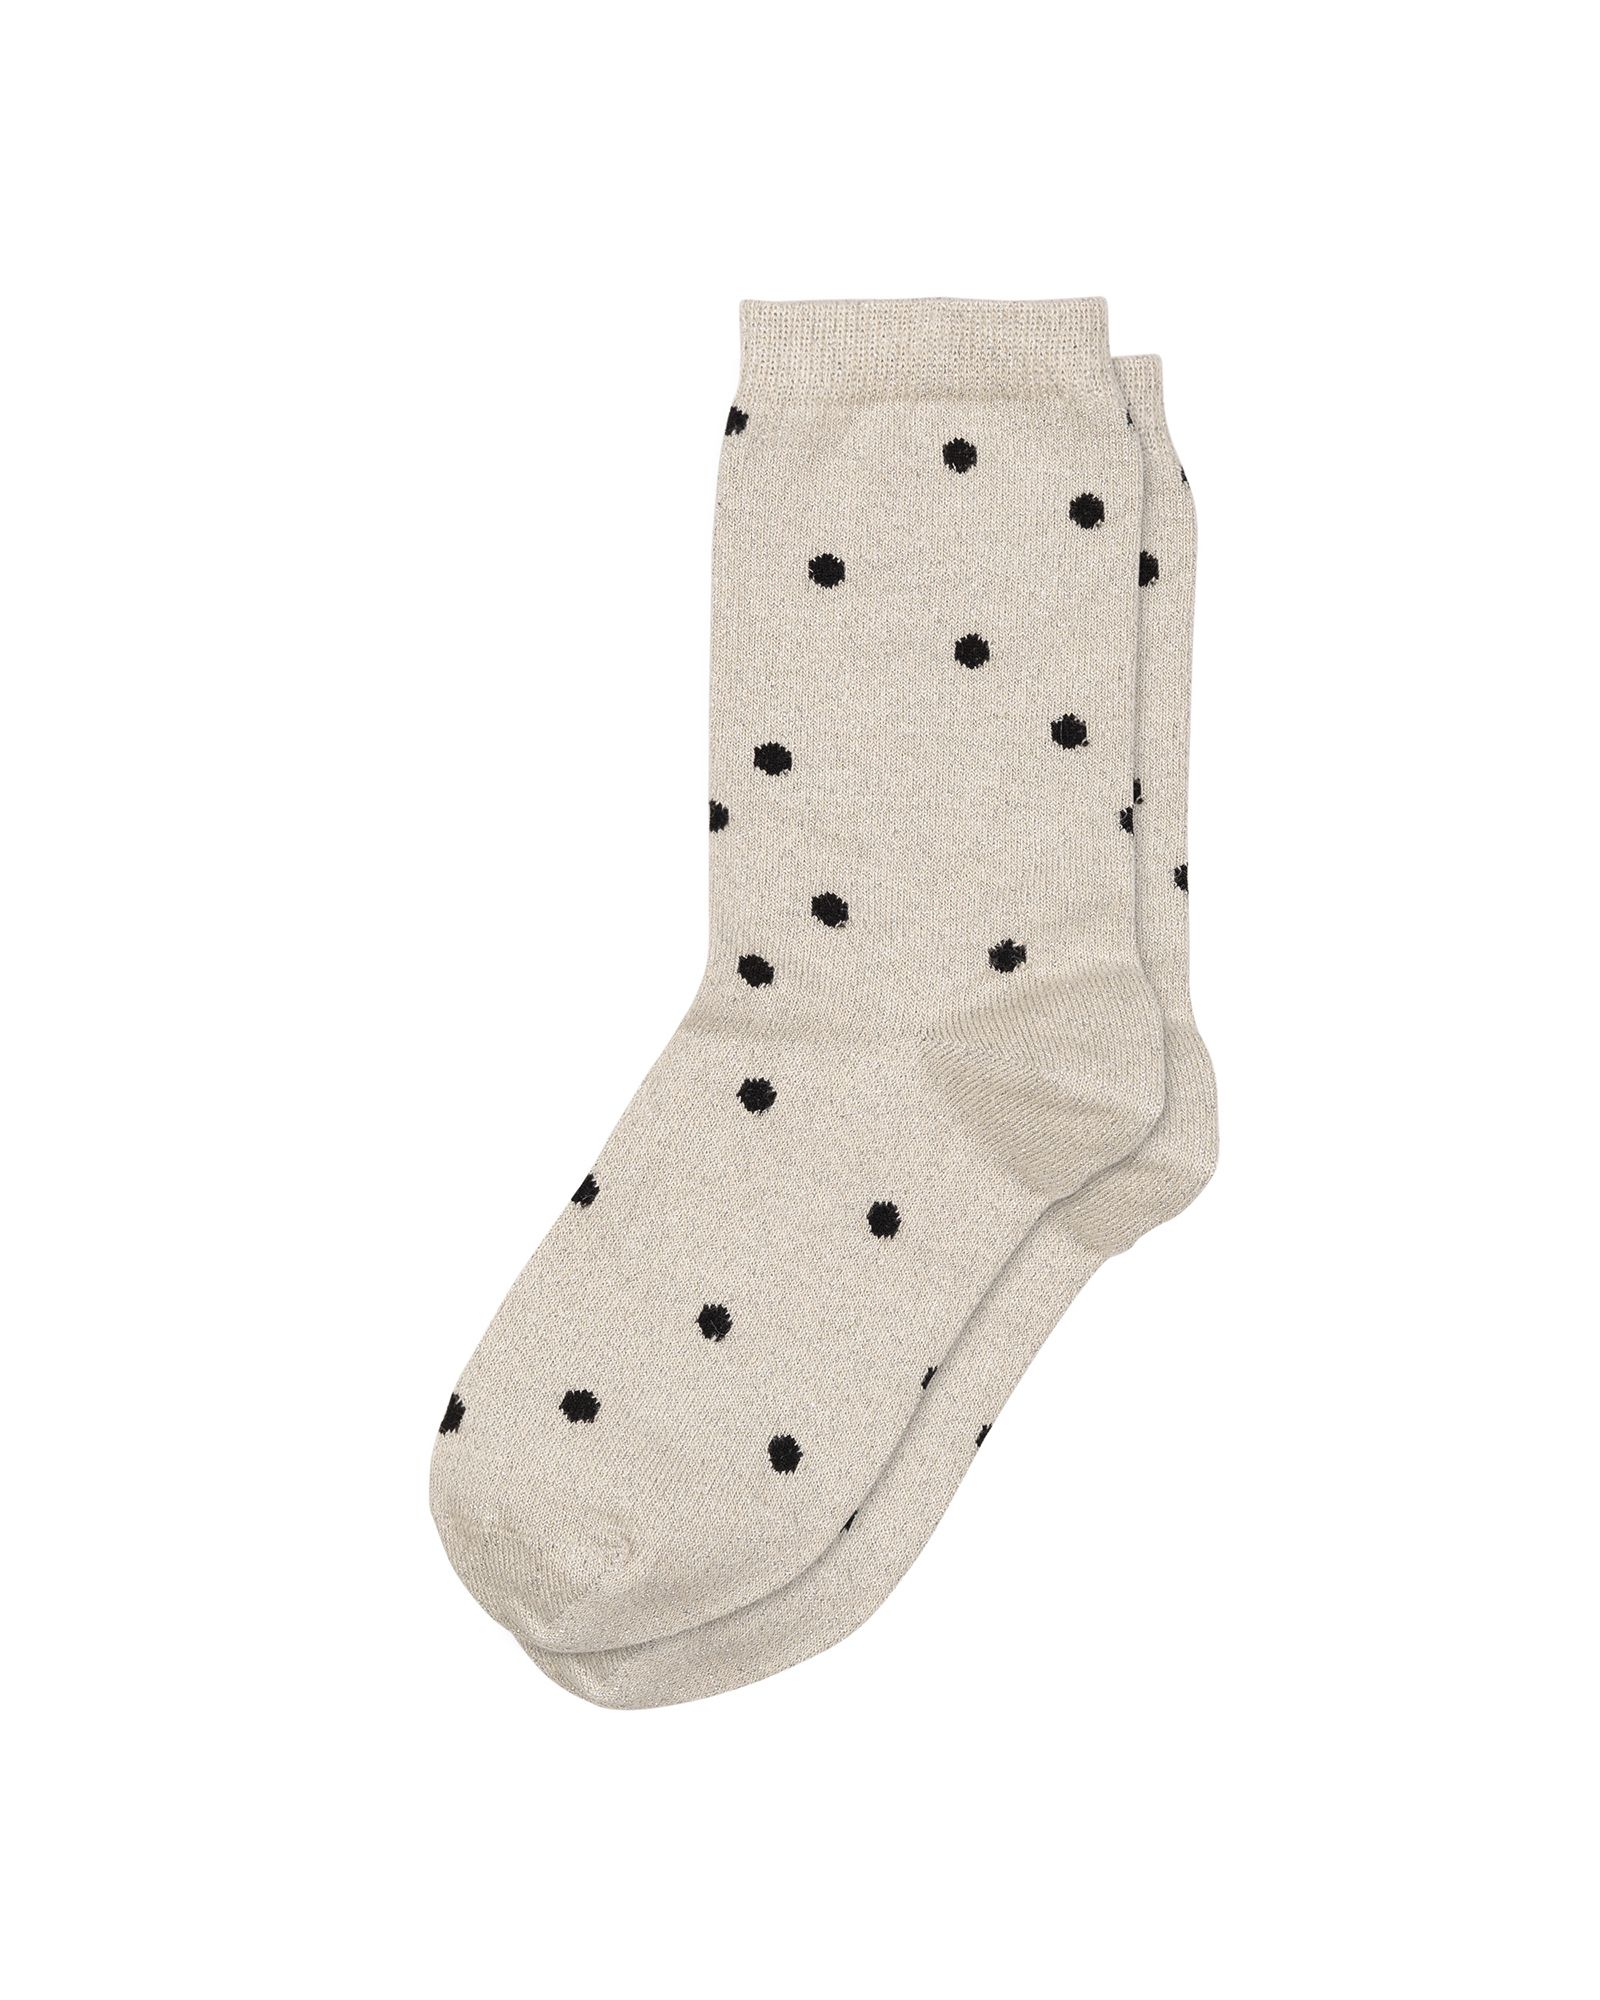 Shimmer Polka Dot Socks | Oliver Bonas